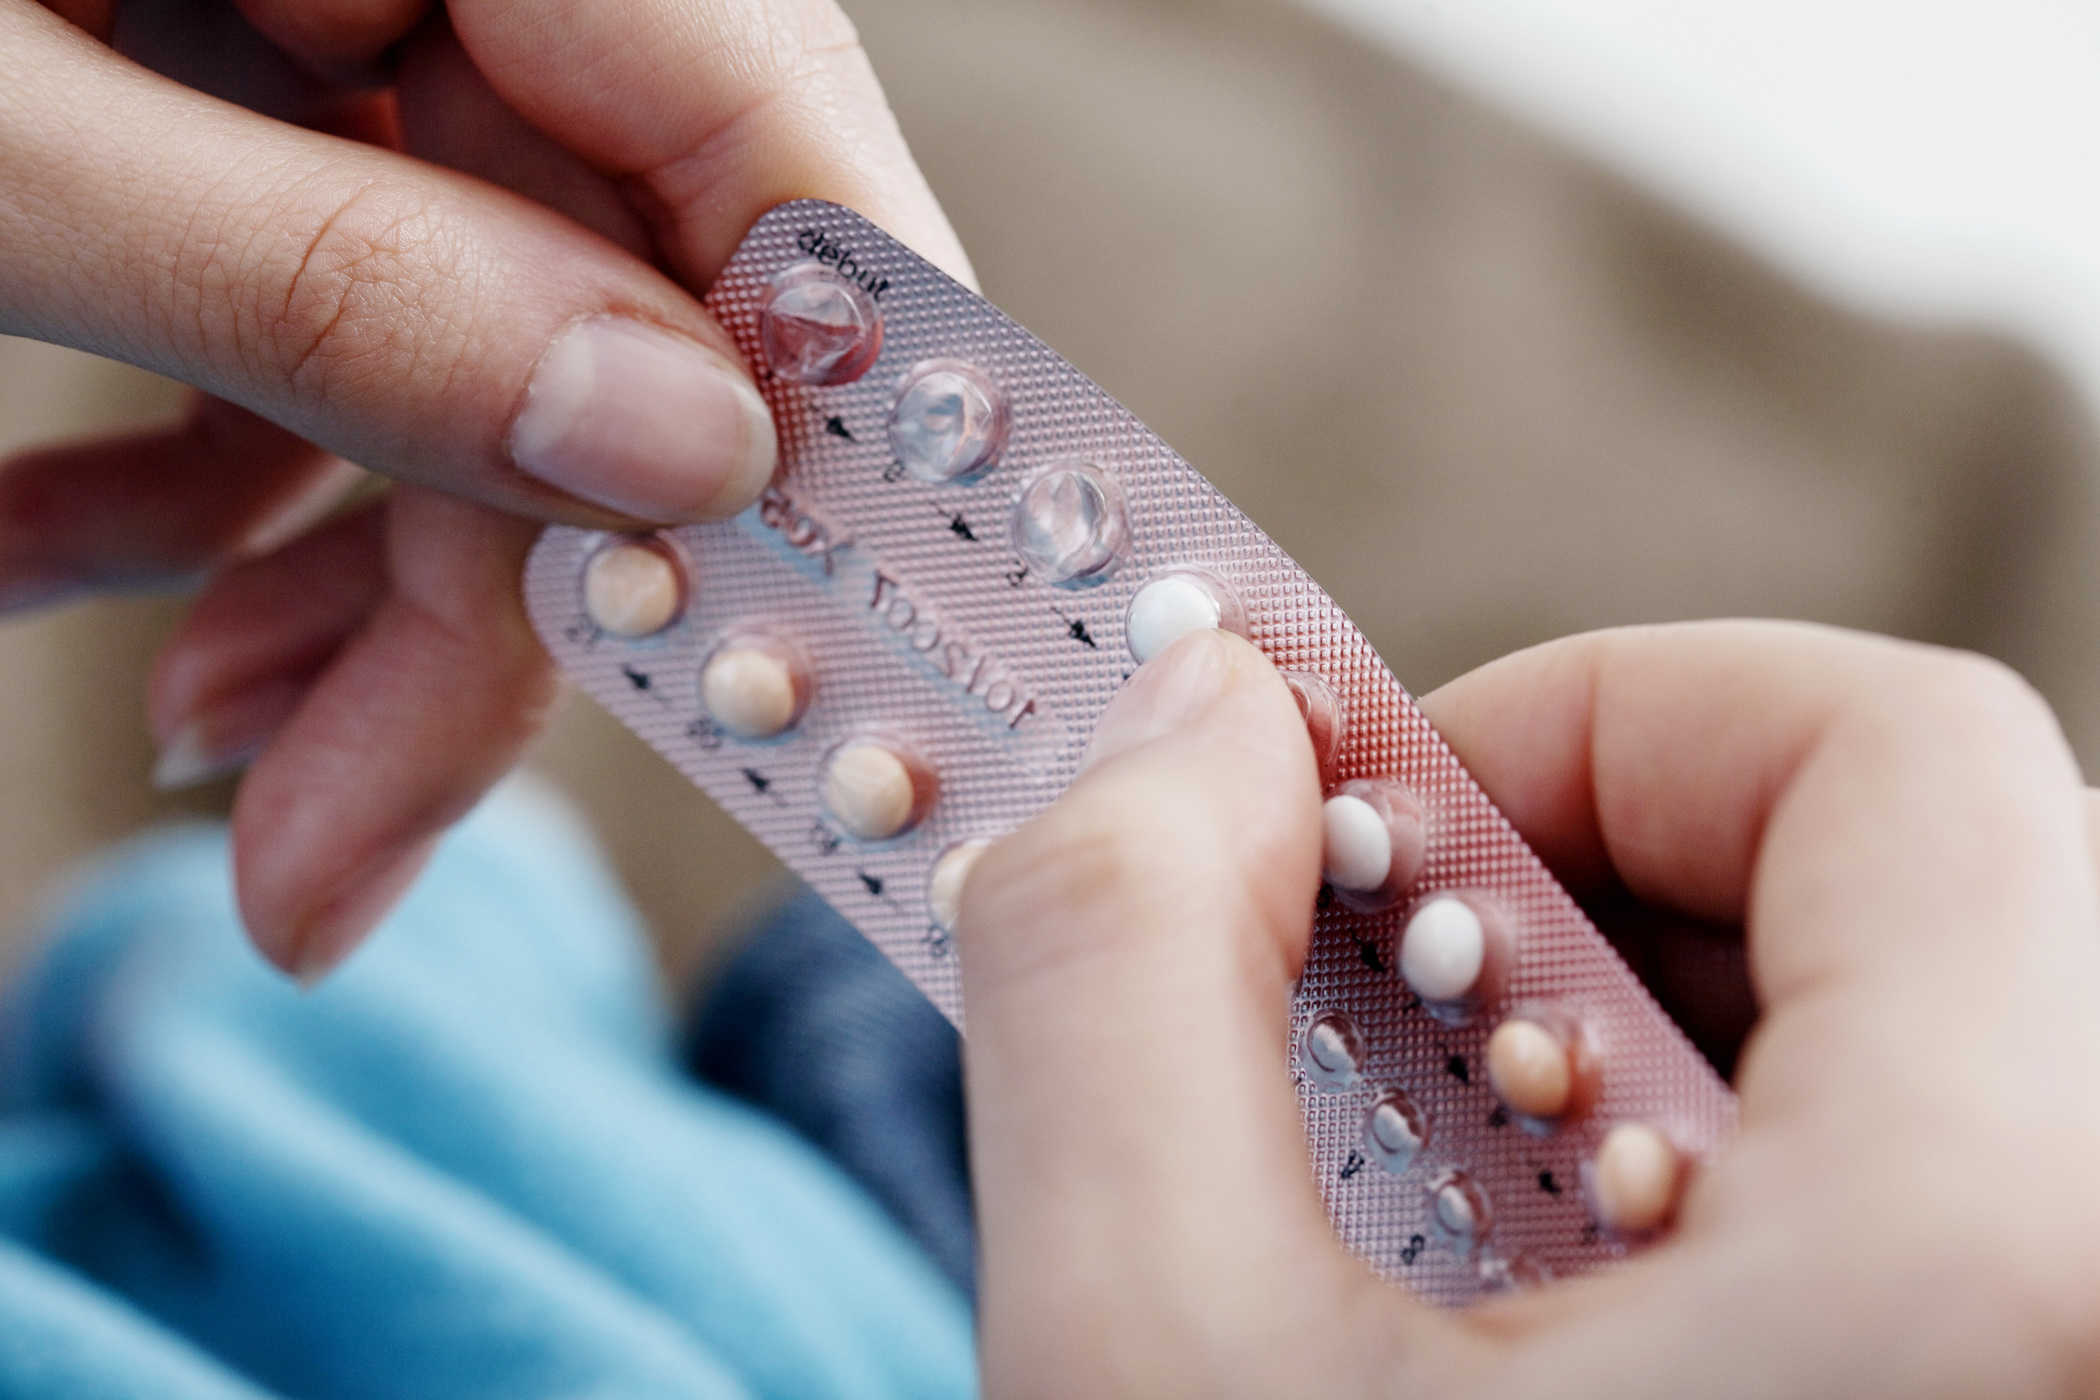 Pil kawalan kelahiran: Manfaat, risiko, dan cara ia berfungsi untuk mencegah kehamilan